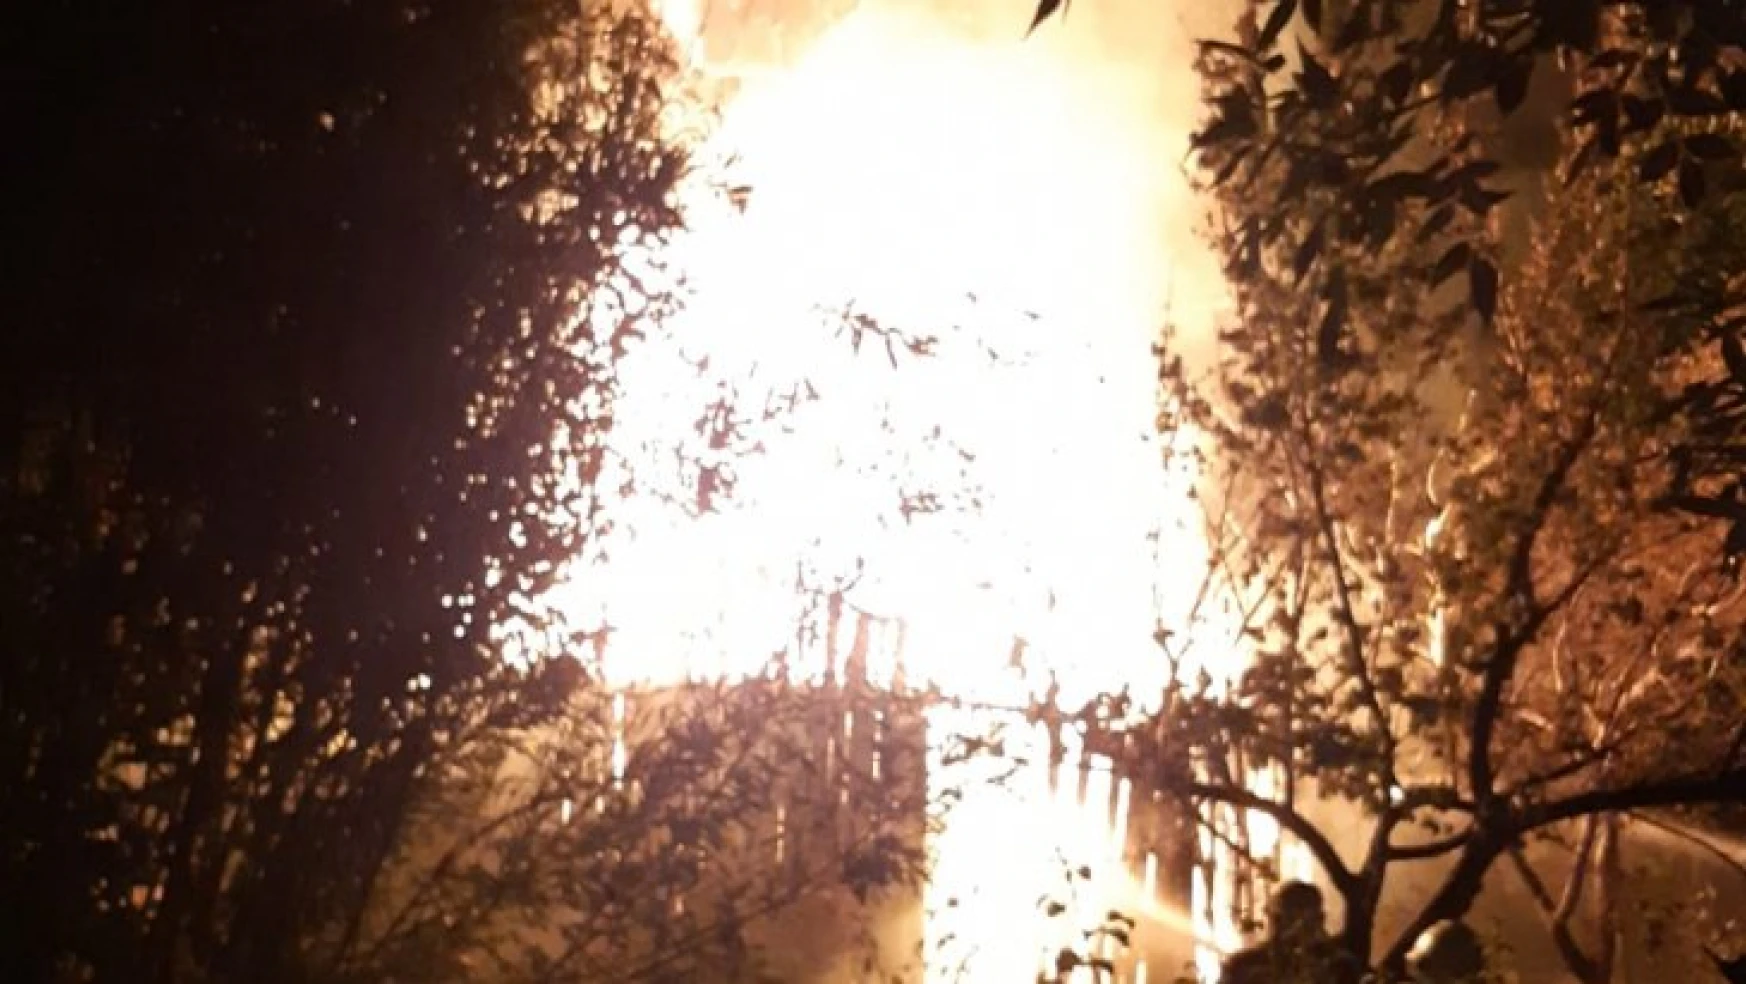 Malatya'da Bağ evinde yangın çıktı